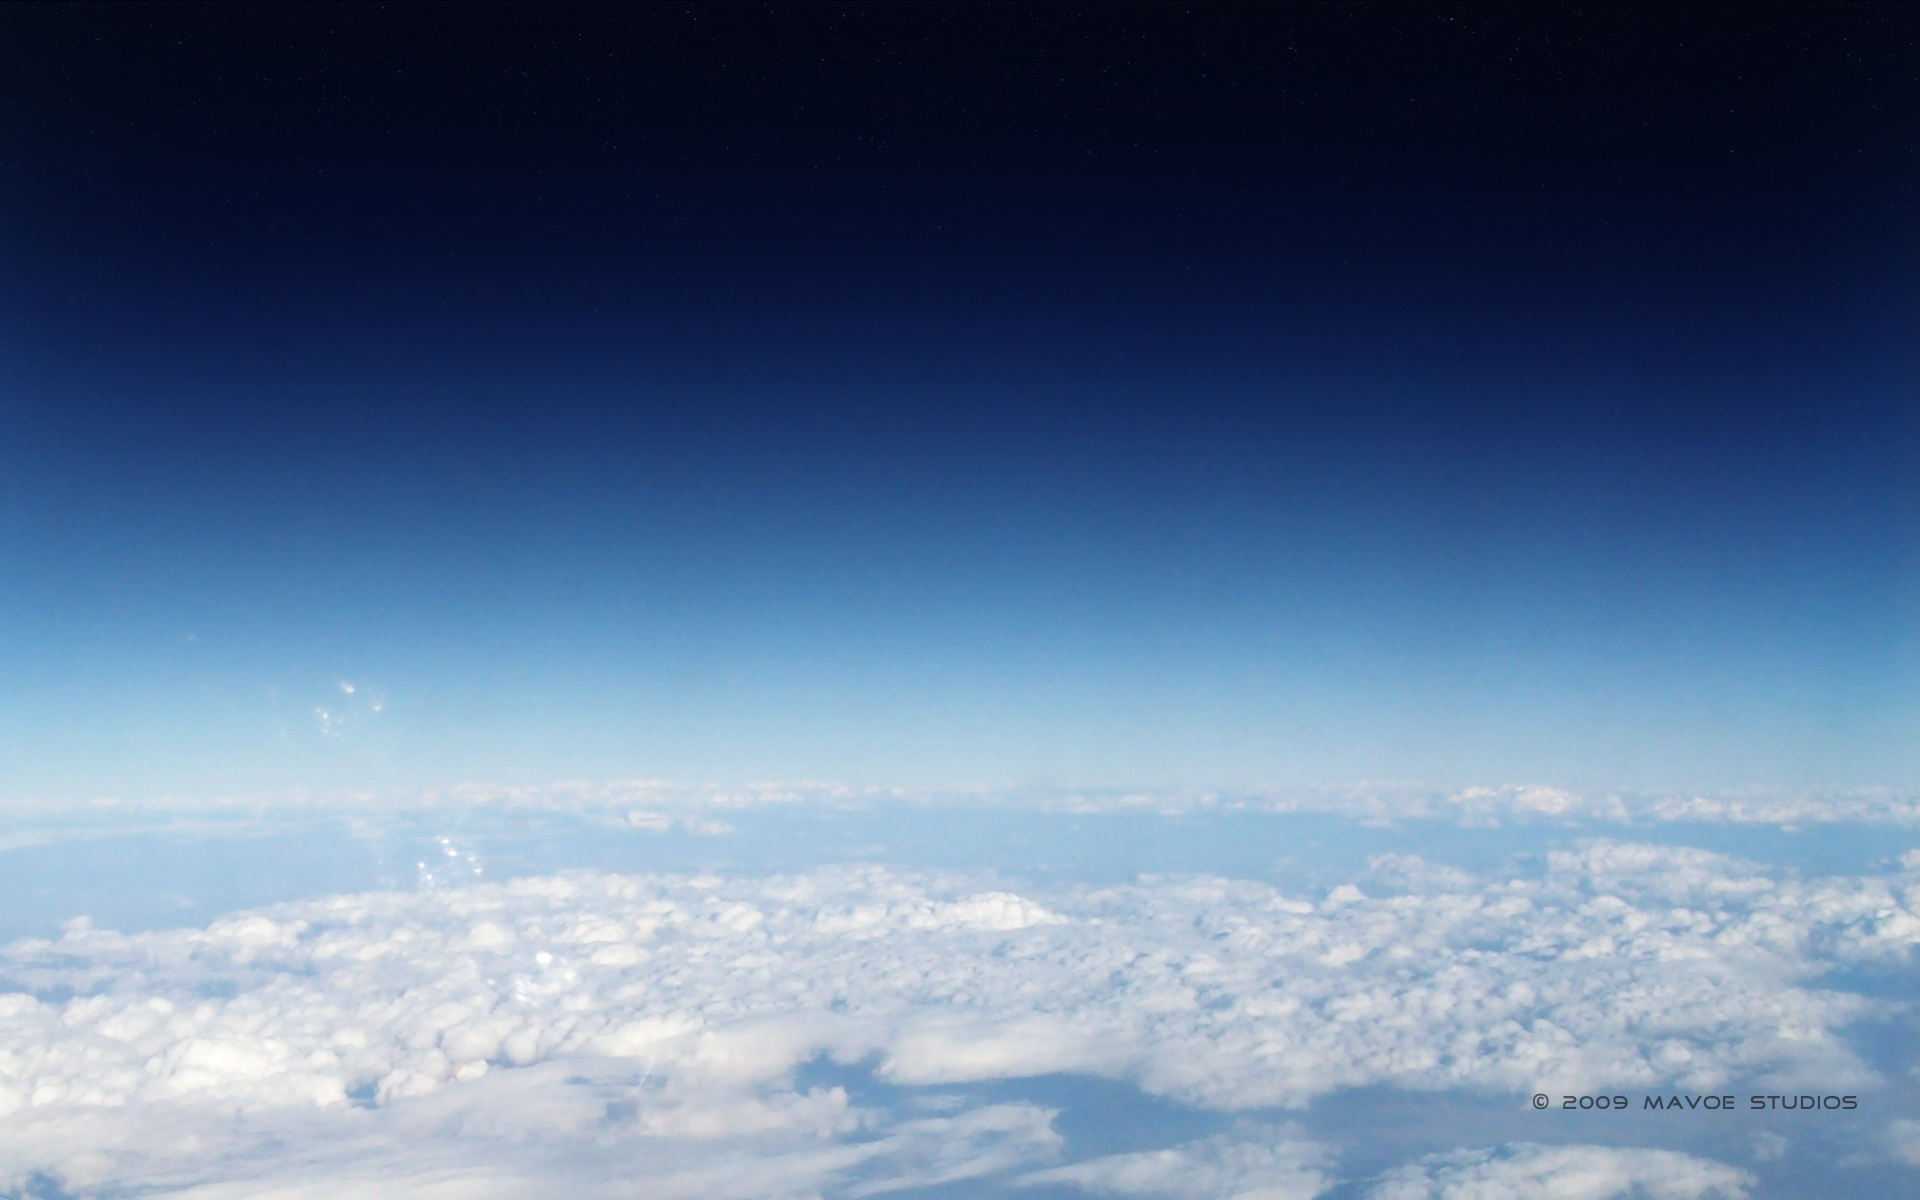 spacex wallpaper,himmel,atmosphäre,wolke,tagsüber,blau